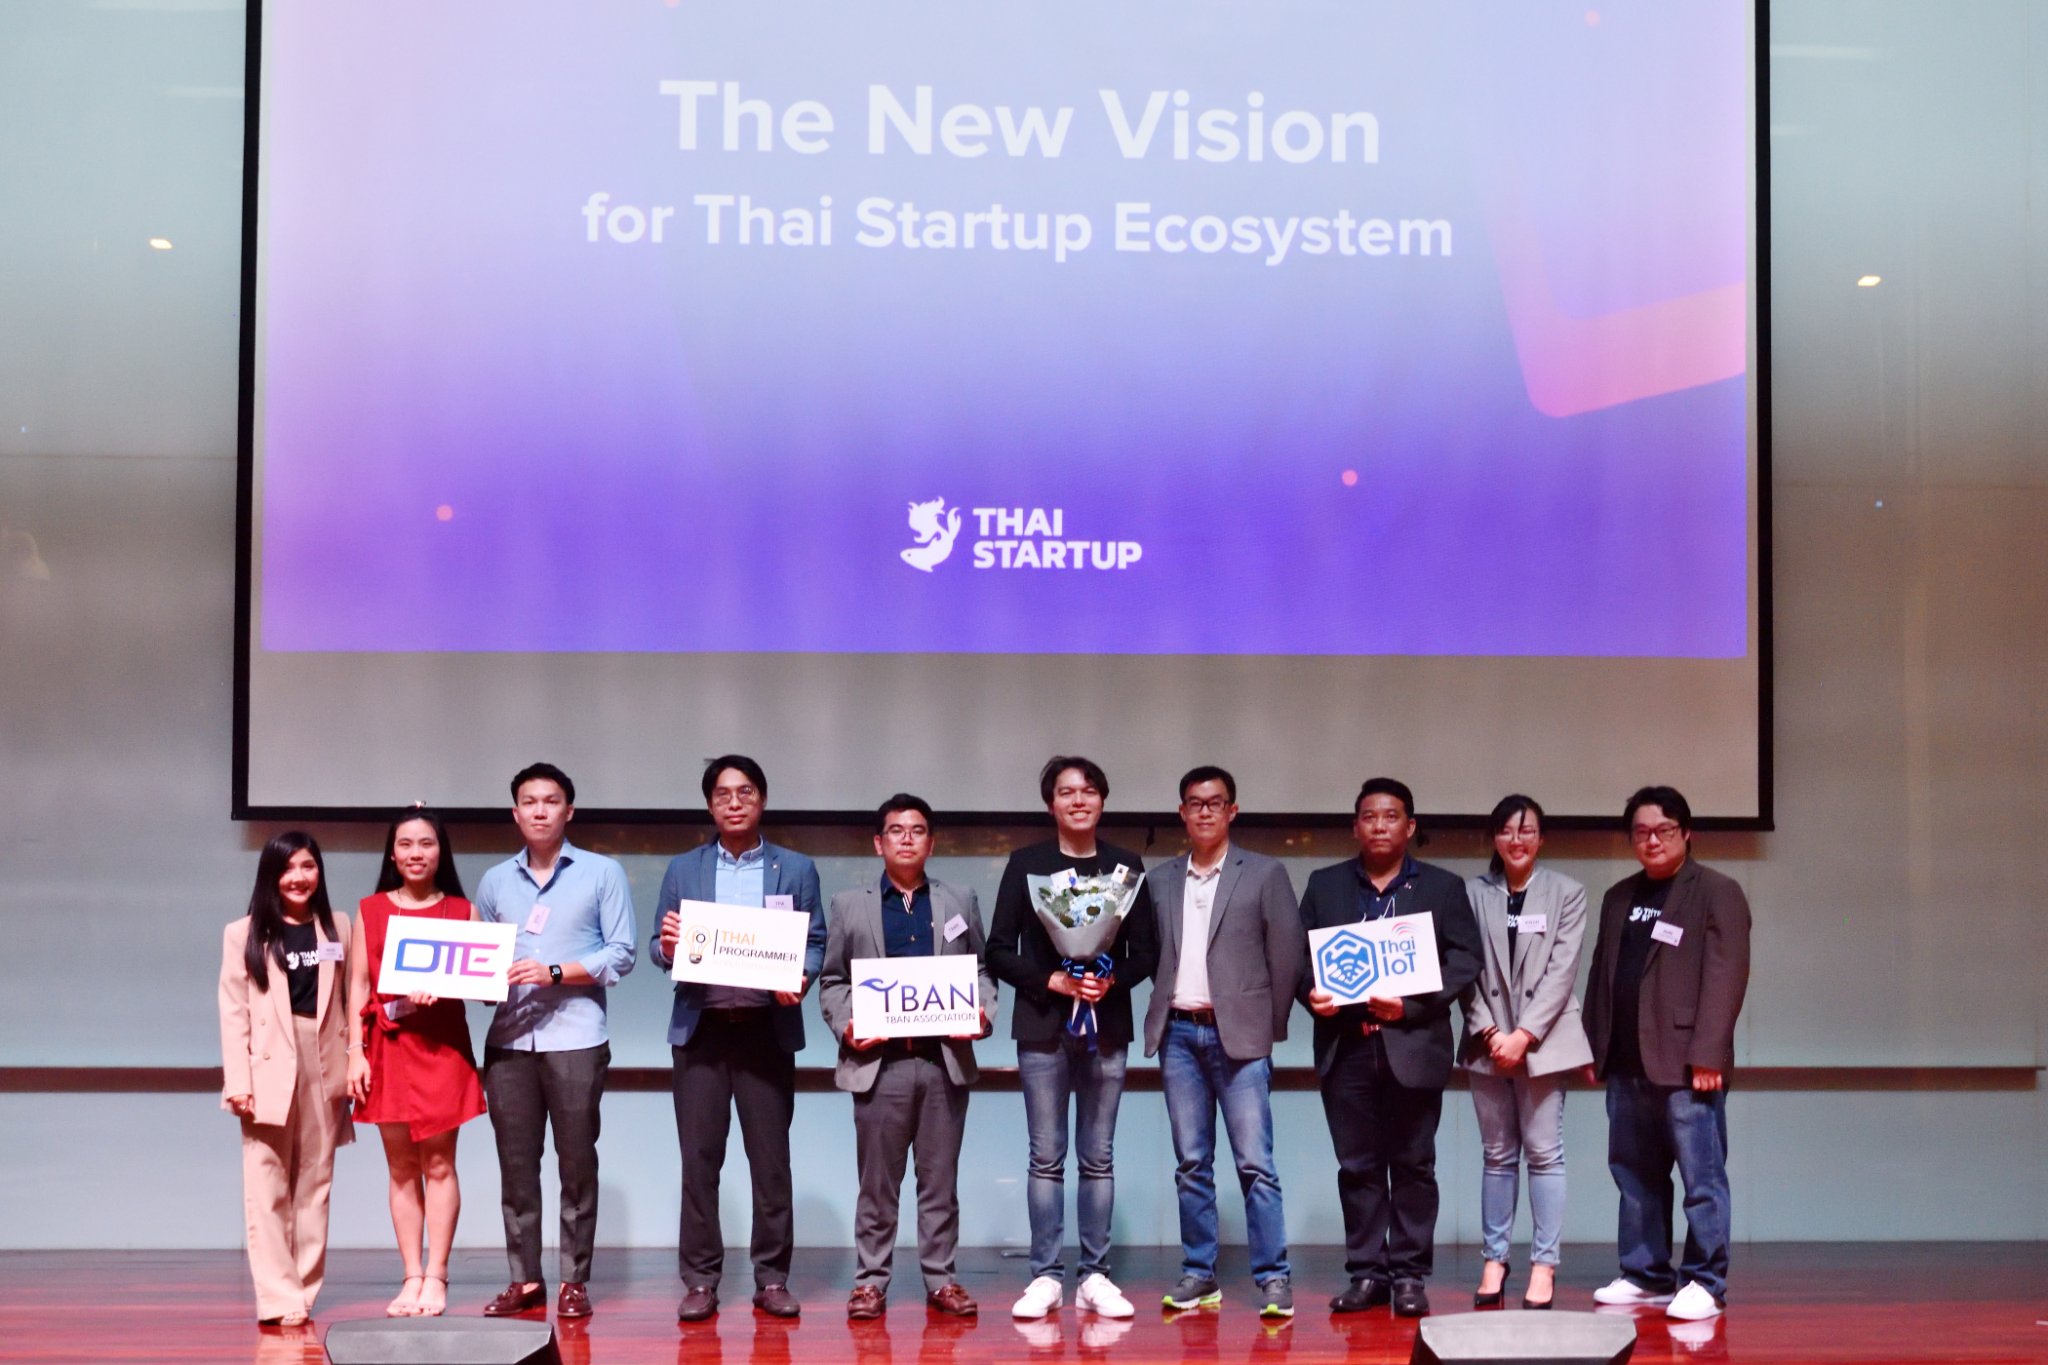 คุณไพบูลย์ พนัสบดี นายกสมาคมโปรแกรมเมอร์ไทย ได้รับเชิญเข้าร่วมงานเปิดตัวและแสดงวิสัยทัศน์ของสมาคมการค้าสตาร์ทอัพไทย (Thai Startup)